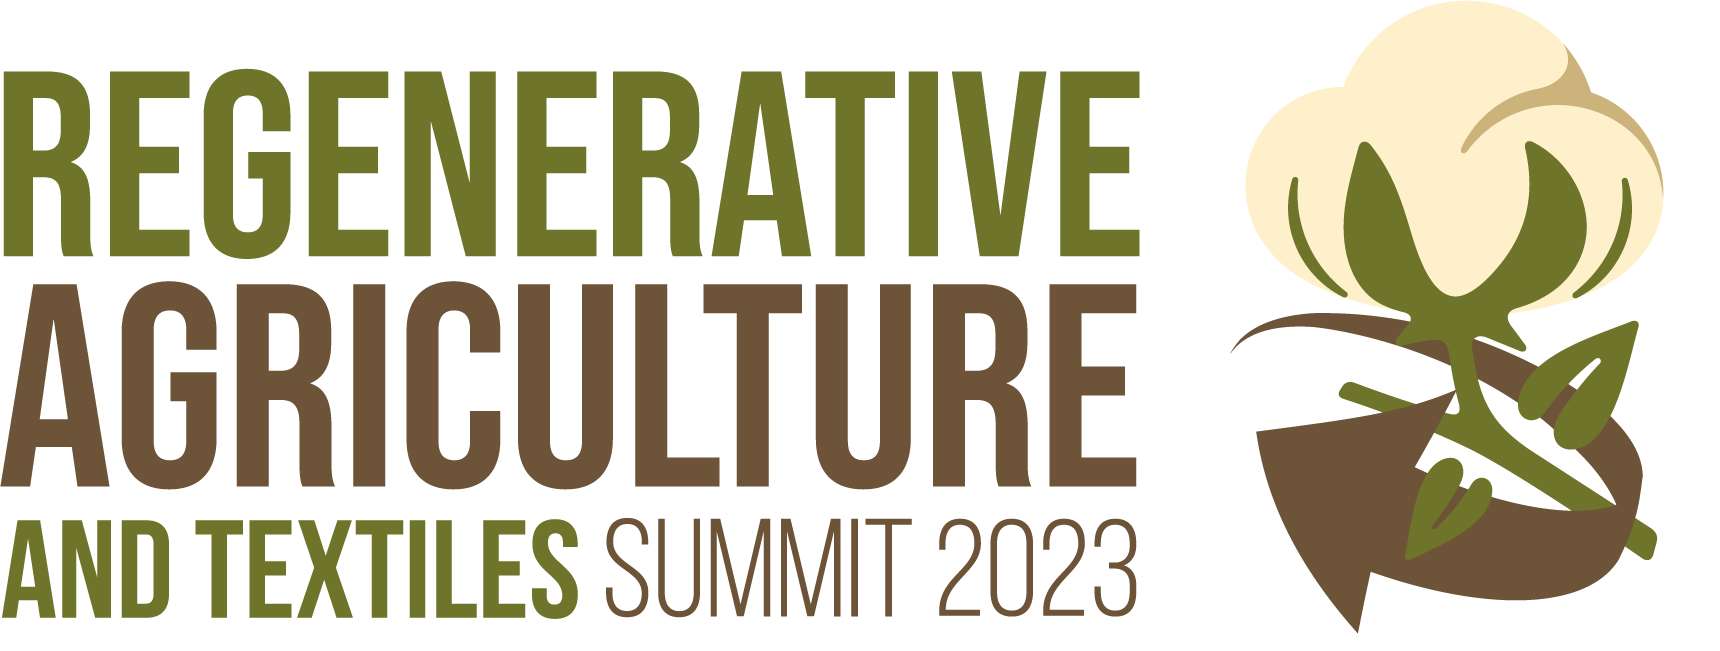 Regenerative Agriculture & Textiles Summit 2023